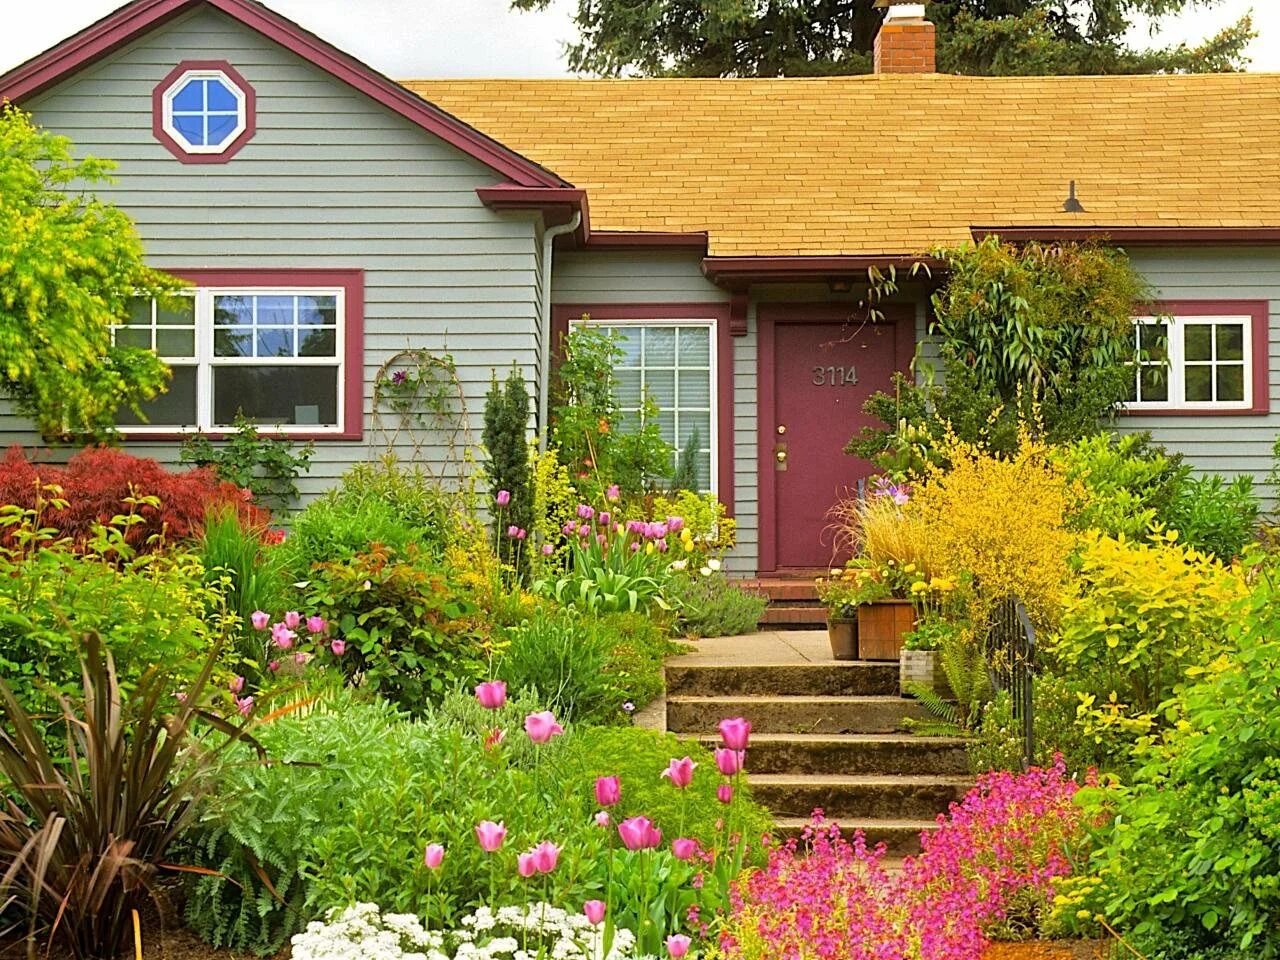 Дом возле садика. Палисадник Энфилд. Суздаль огороды палисадники. Красивая дача. Цветы в палисаднике перед домом.